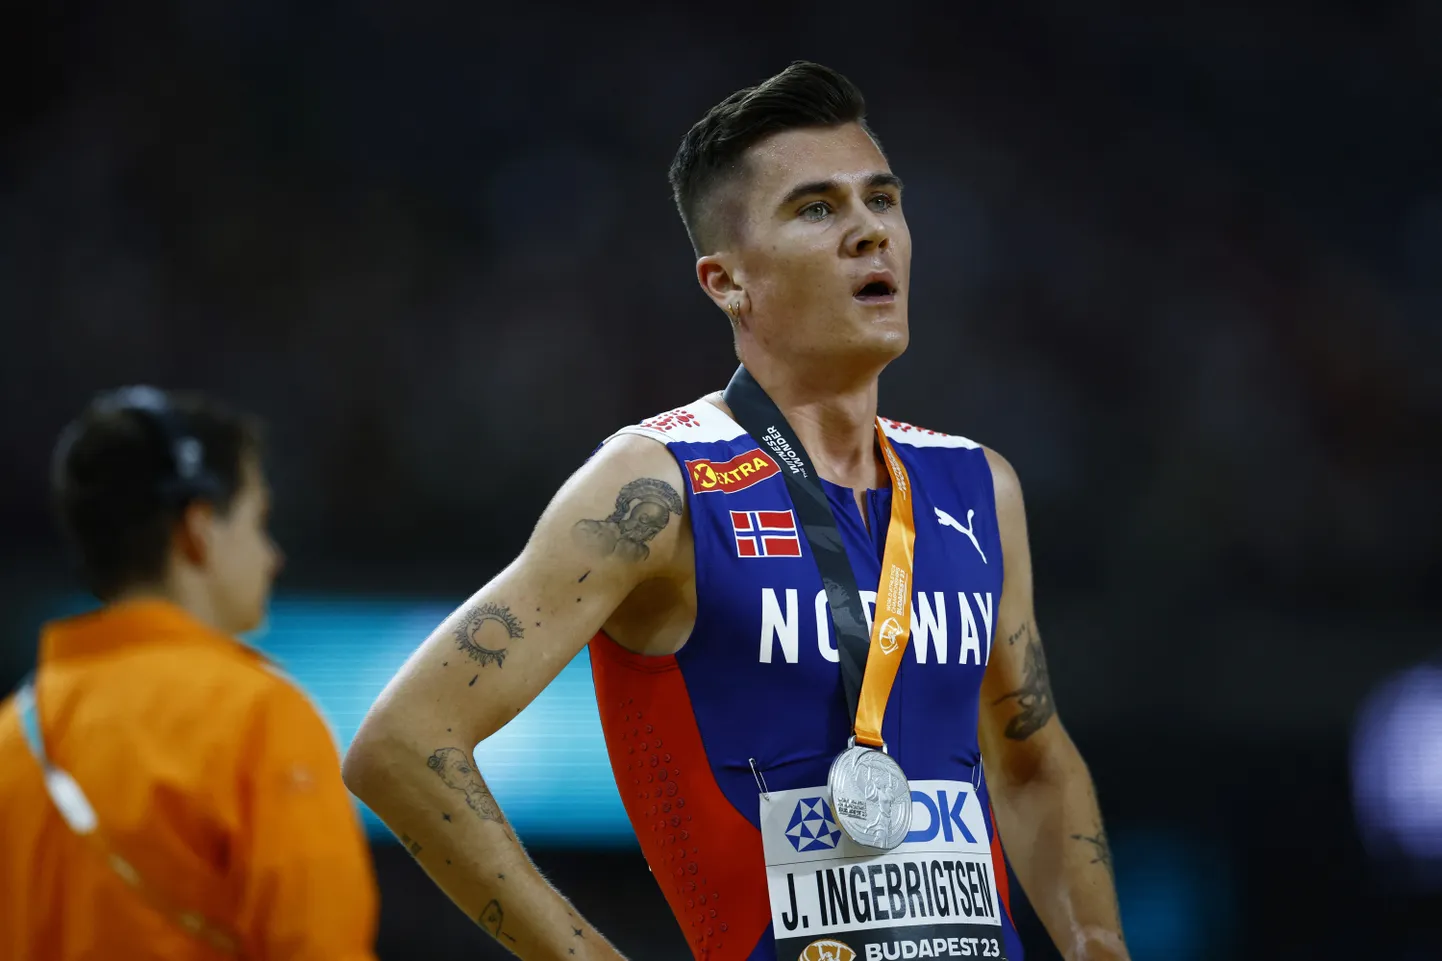 Jakob Ingebrigtsen pidi teist MMi järjest leppima 1500 meetri jooksu hõbemedaliga.